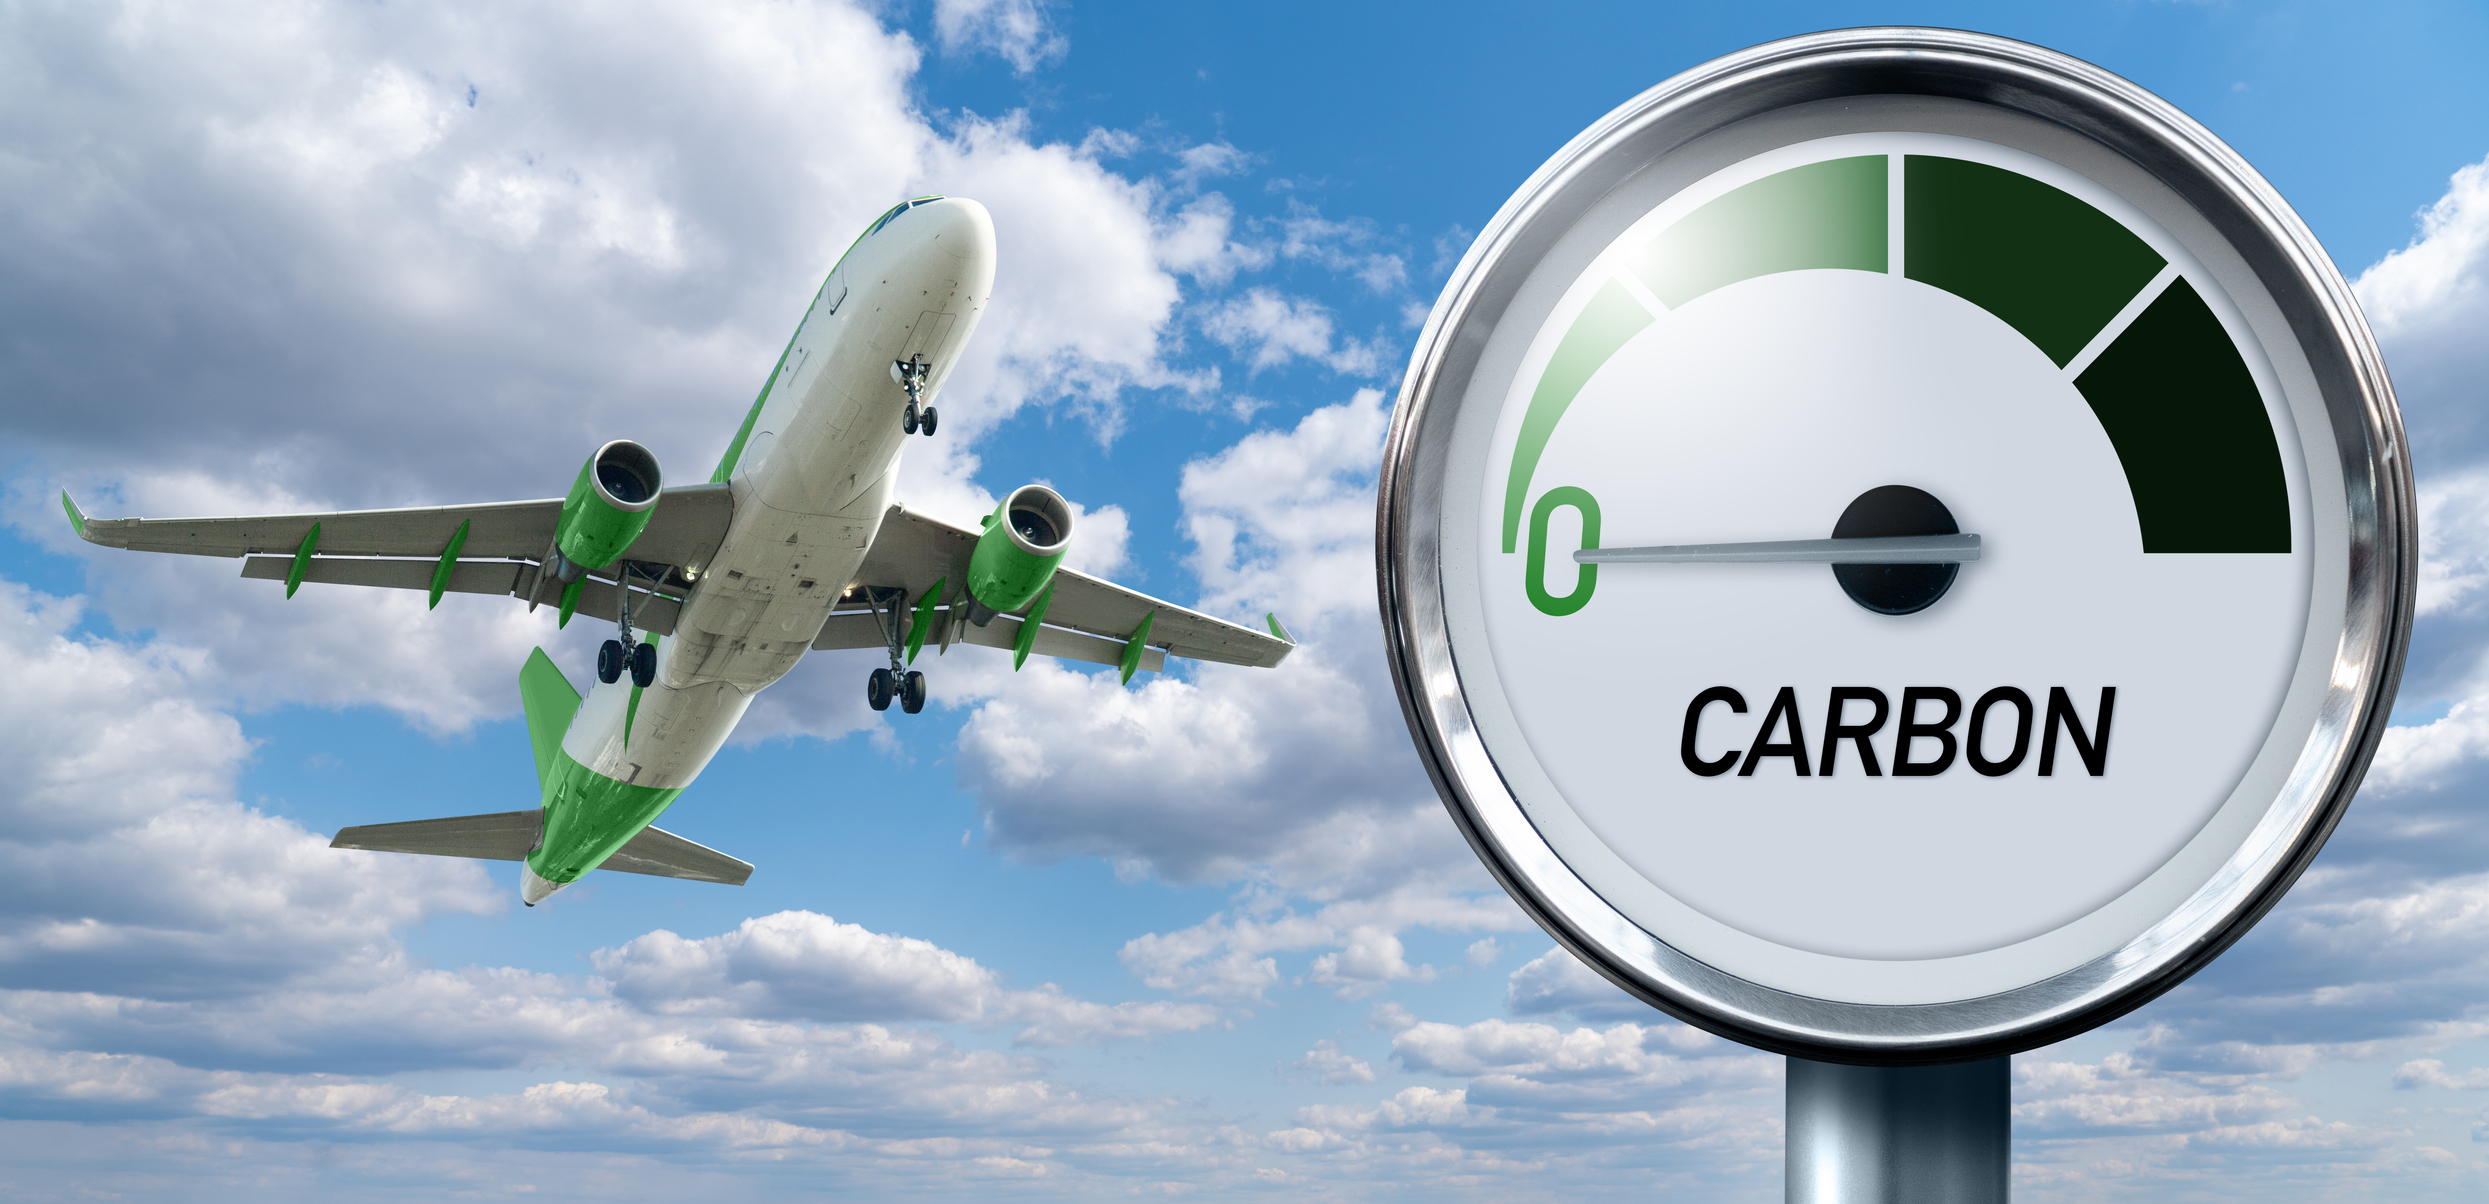 Este aeropuerto prohibirá los vuelos privados en 2026 para reducir emisiones de CO2  